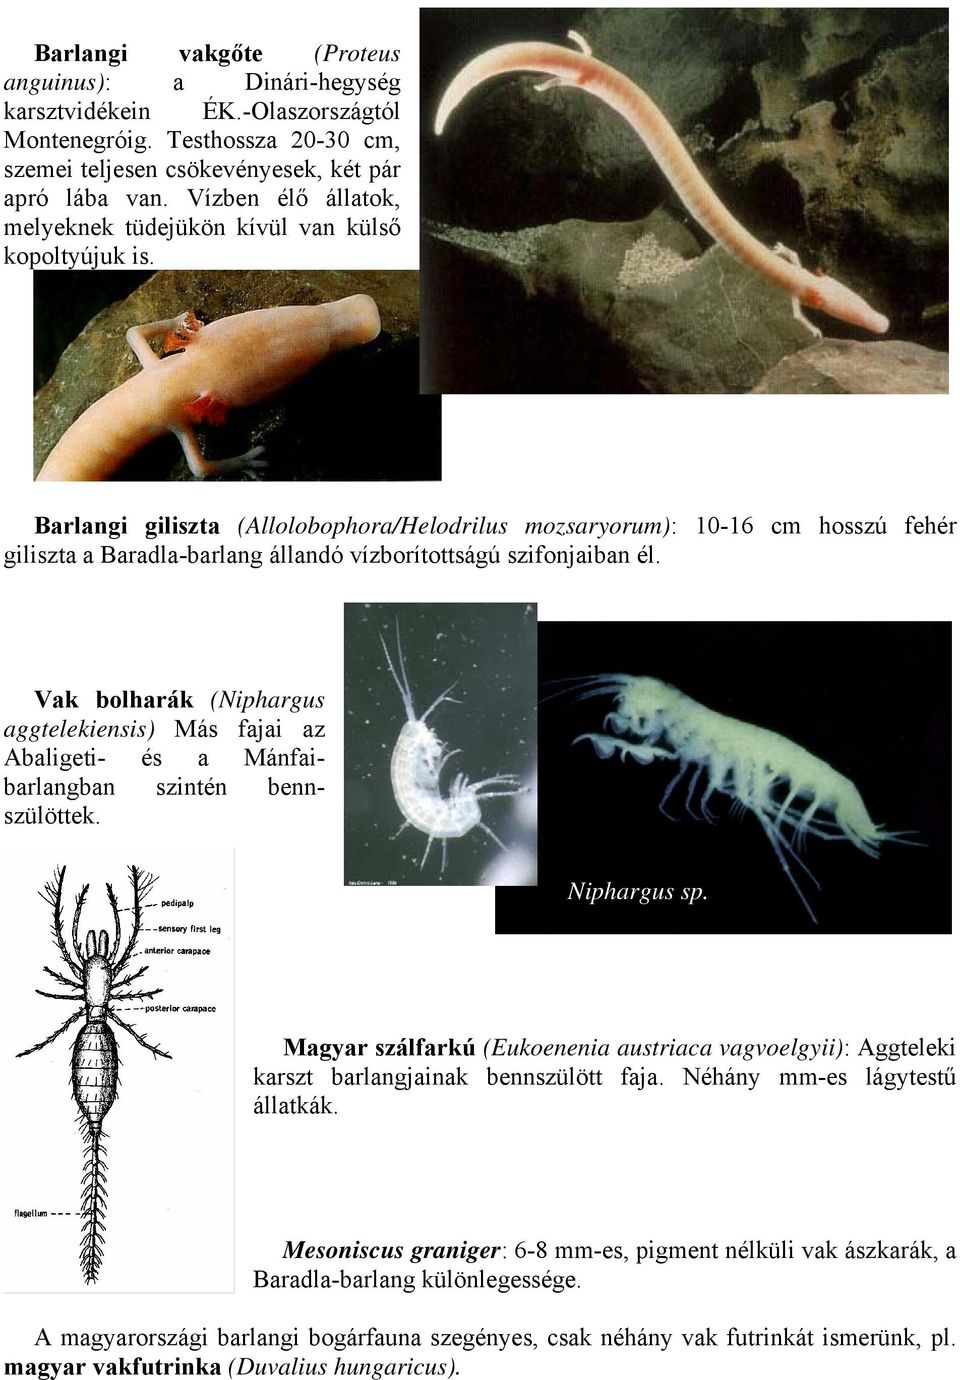 Barlangi giliszta (Allolobophora/Helodrilus mozsaryorum): 10-16 cm hosszú fehér giliszta a Baradla-barlang állandó vízborítottságú szifonjaiban él.